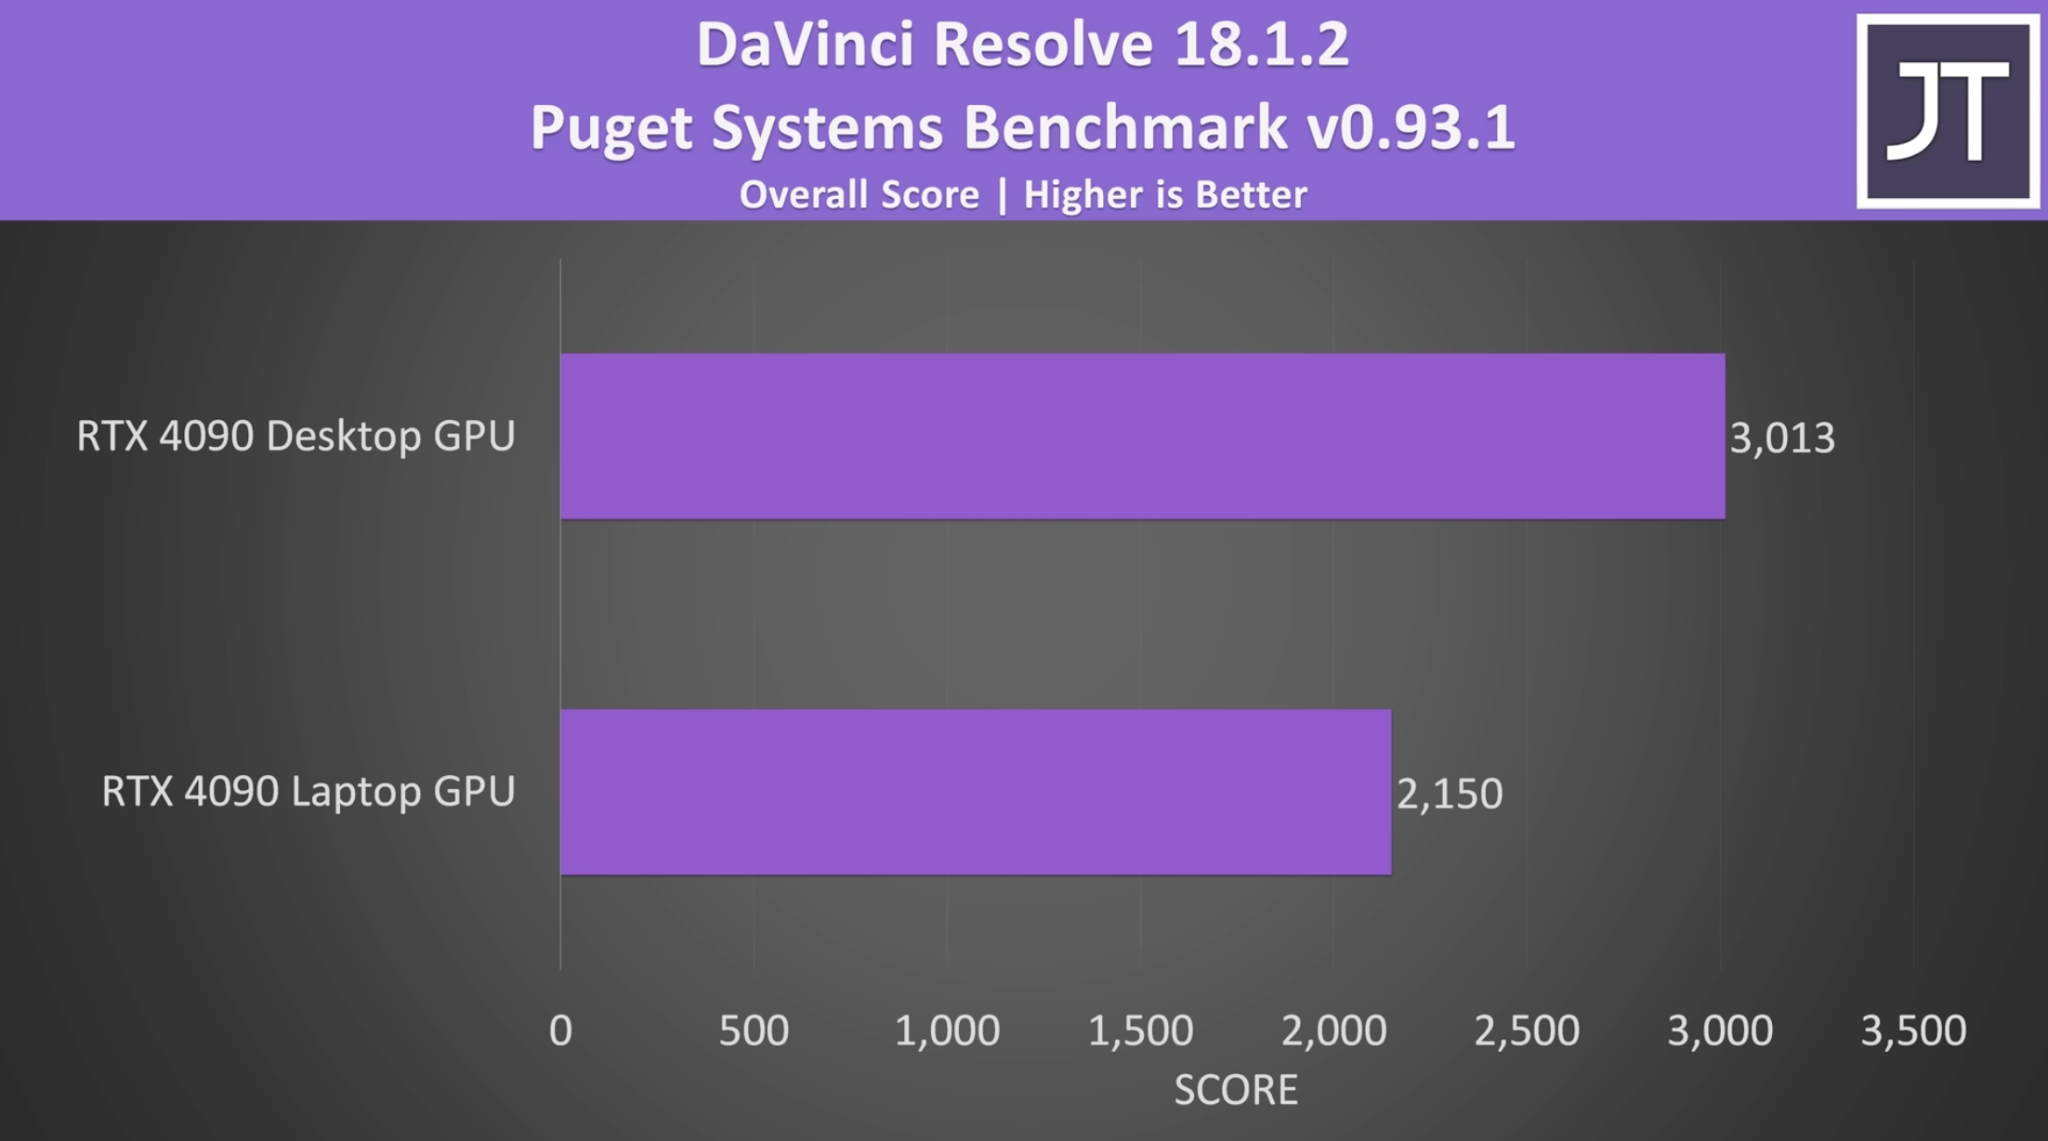 DaVinci Resolve benchmark for RTX 4090 Desktop vs RTX 4090 Laptop